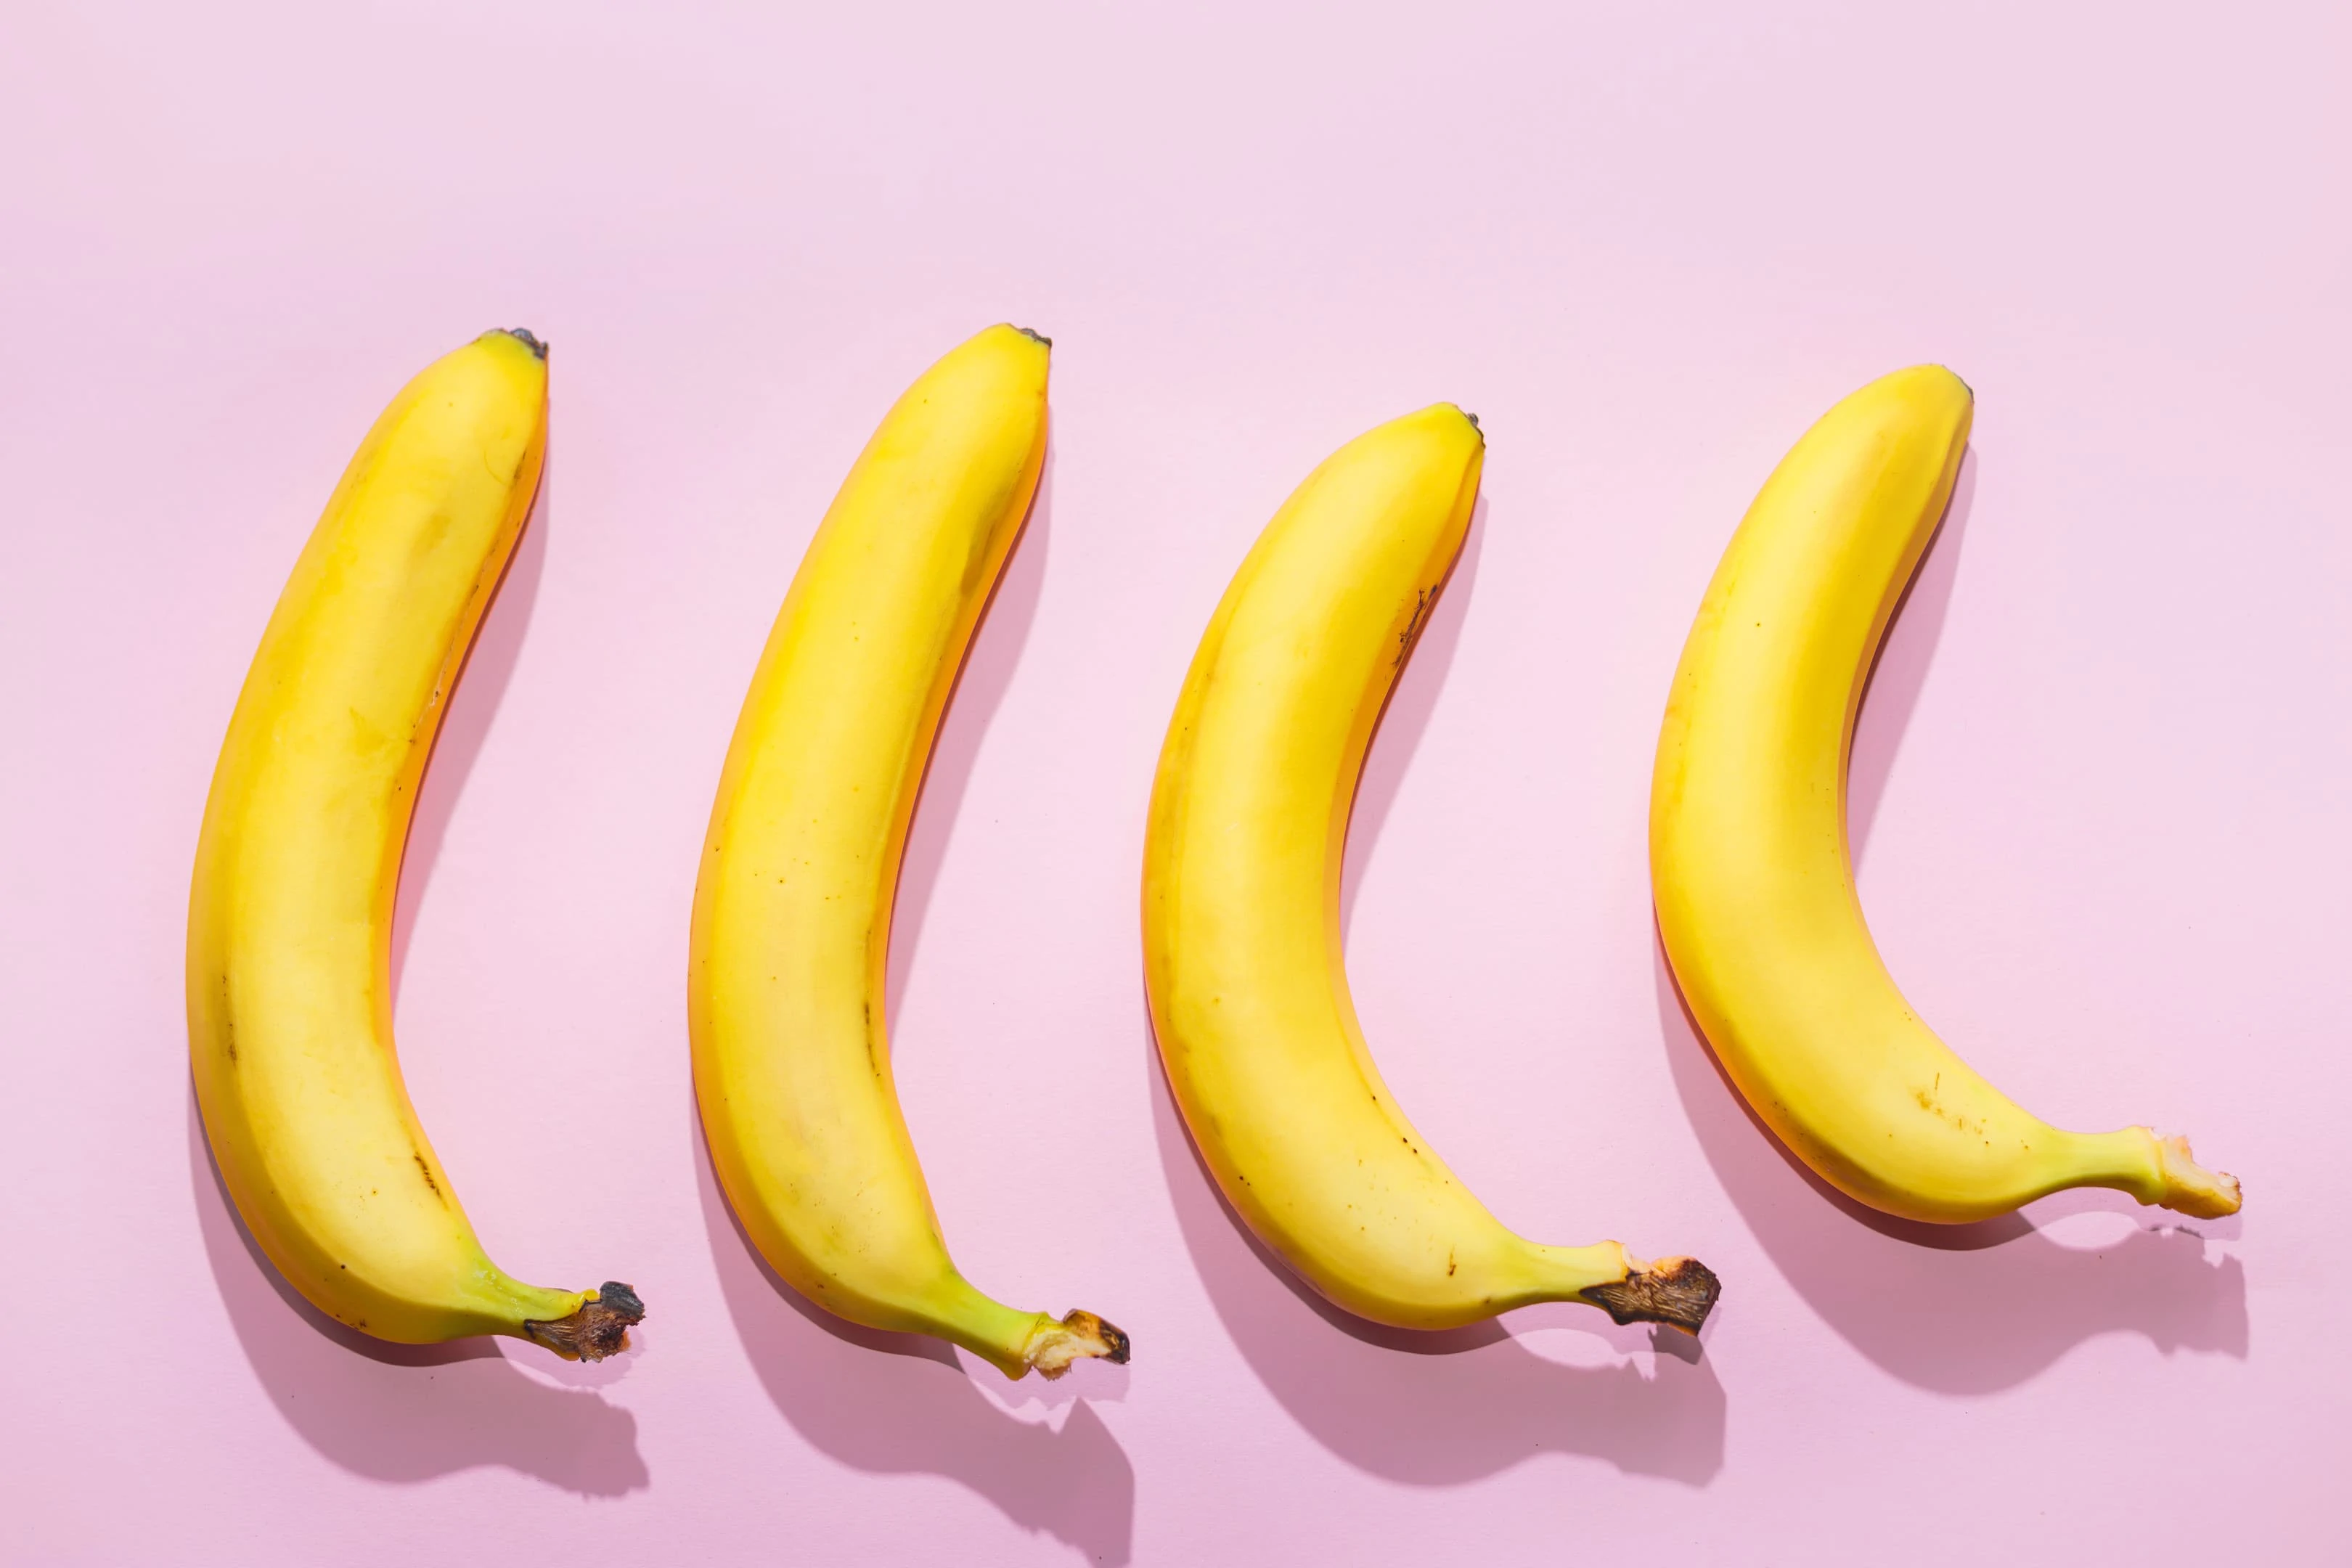 Bananas on pink pastel background